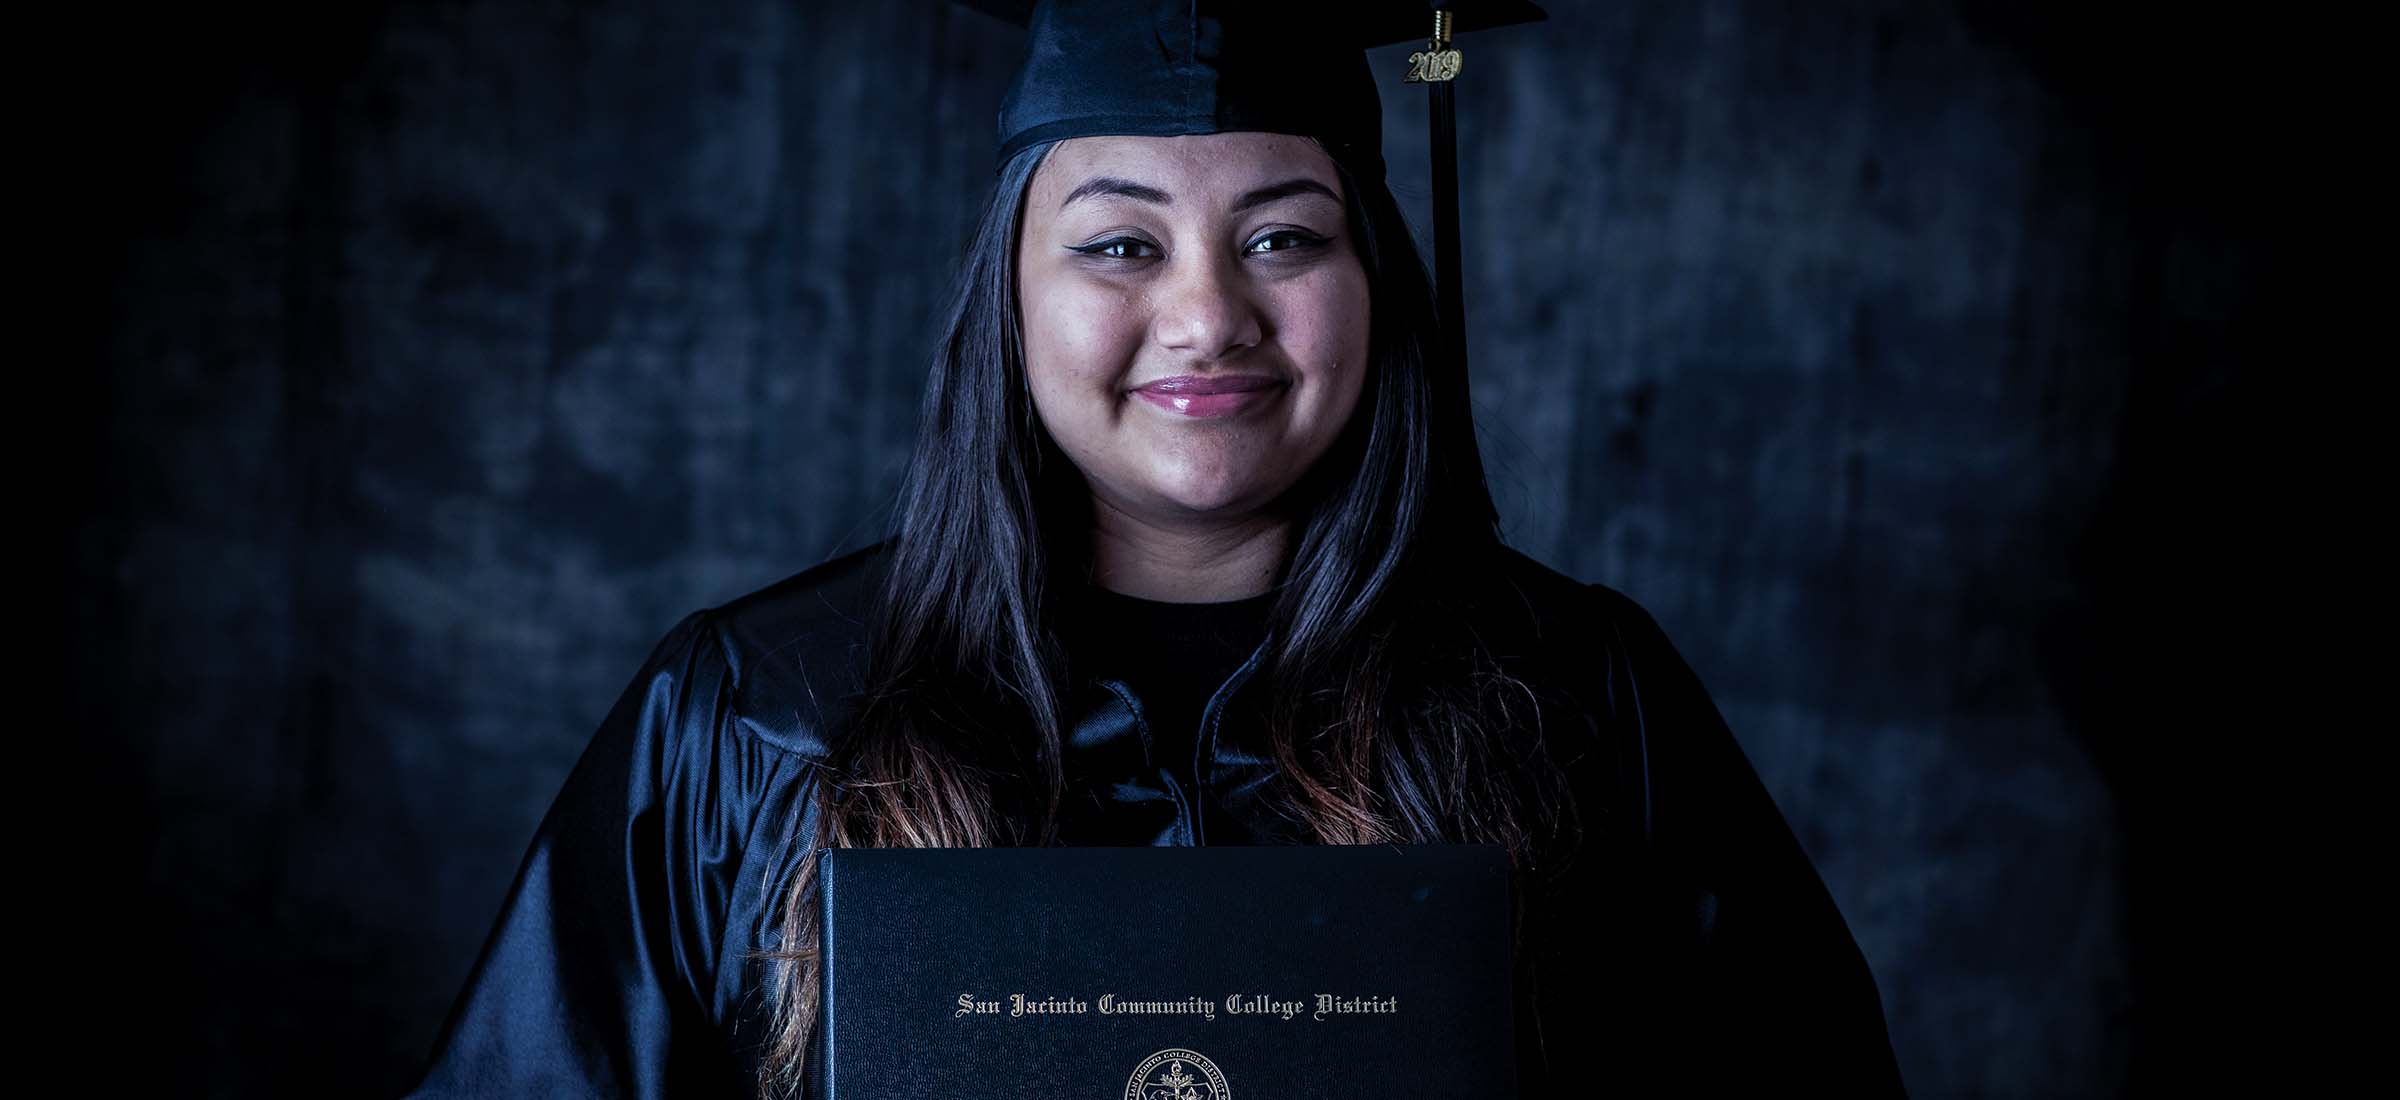 San Jacinto College Graduate